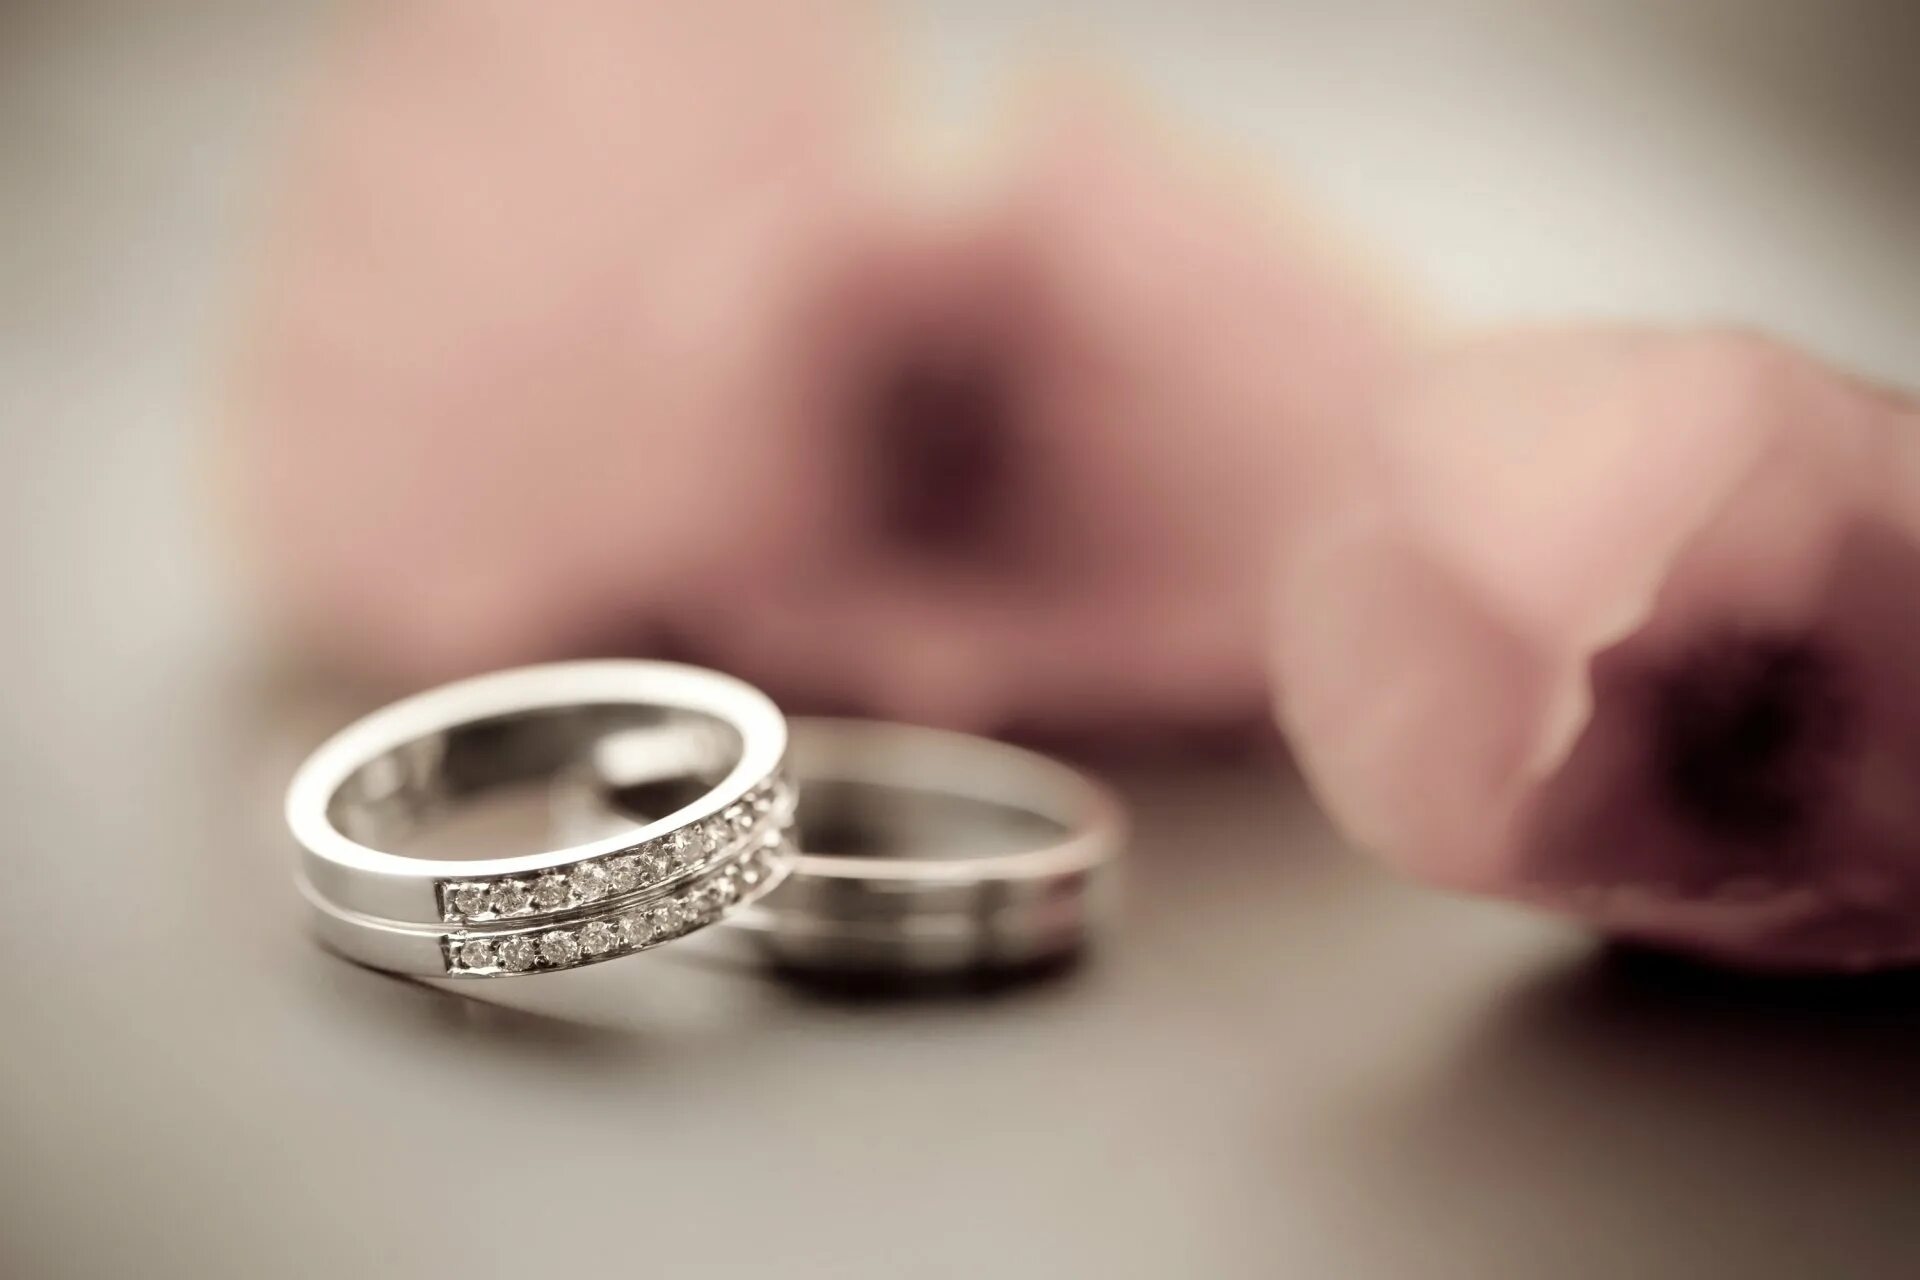 Poor girl ate wedding ring на русском. Красивые Свадебные кольца. Обручальное кольцо. Кольца новобрачных. Кольца на свадьбу обручальные.